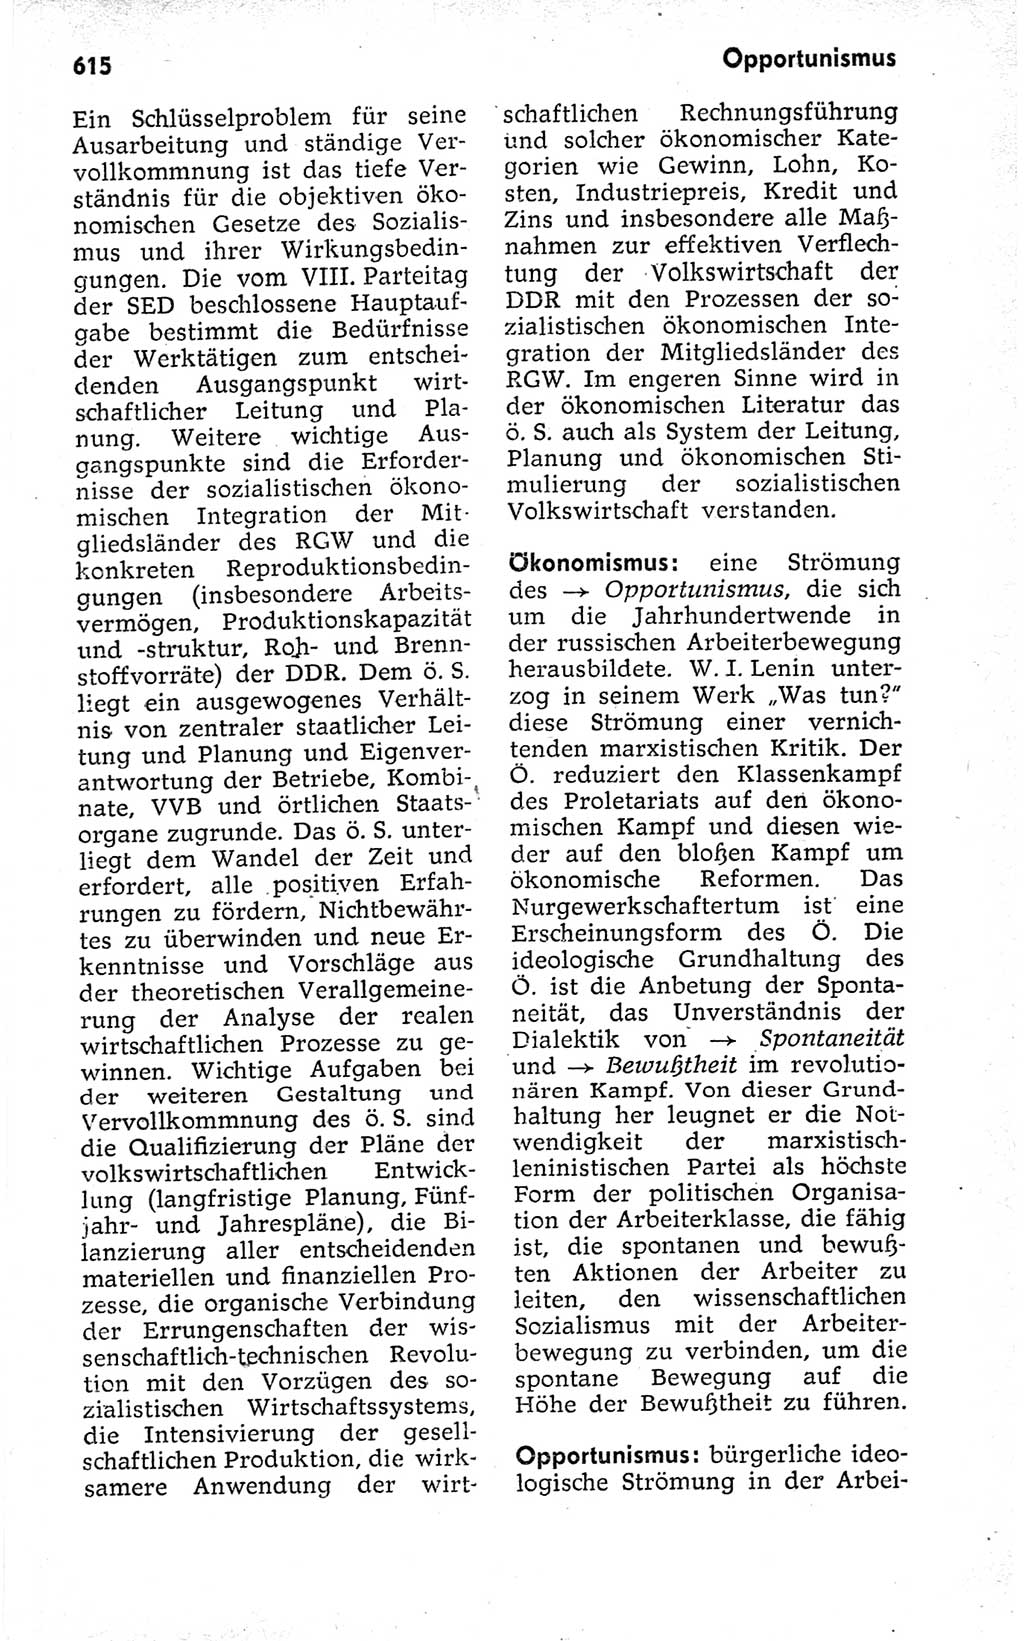 Kleines politisches Wörterbuch [Deutsche Demokratische Republik (DDR)] 1973, Seite 615 (Kl. pol. Wb. DDR 1973, S. 615)